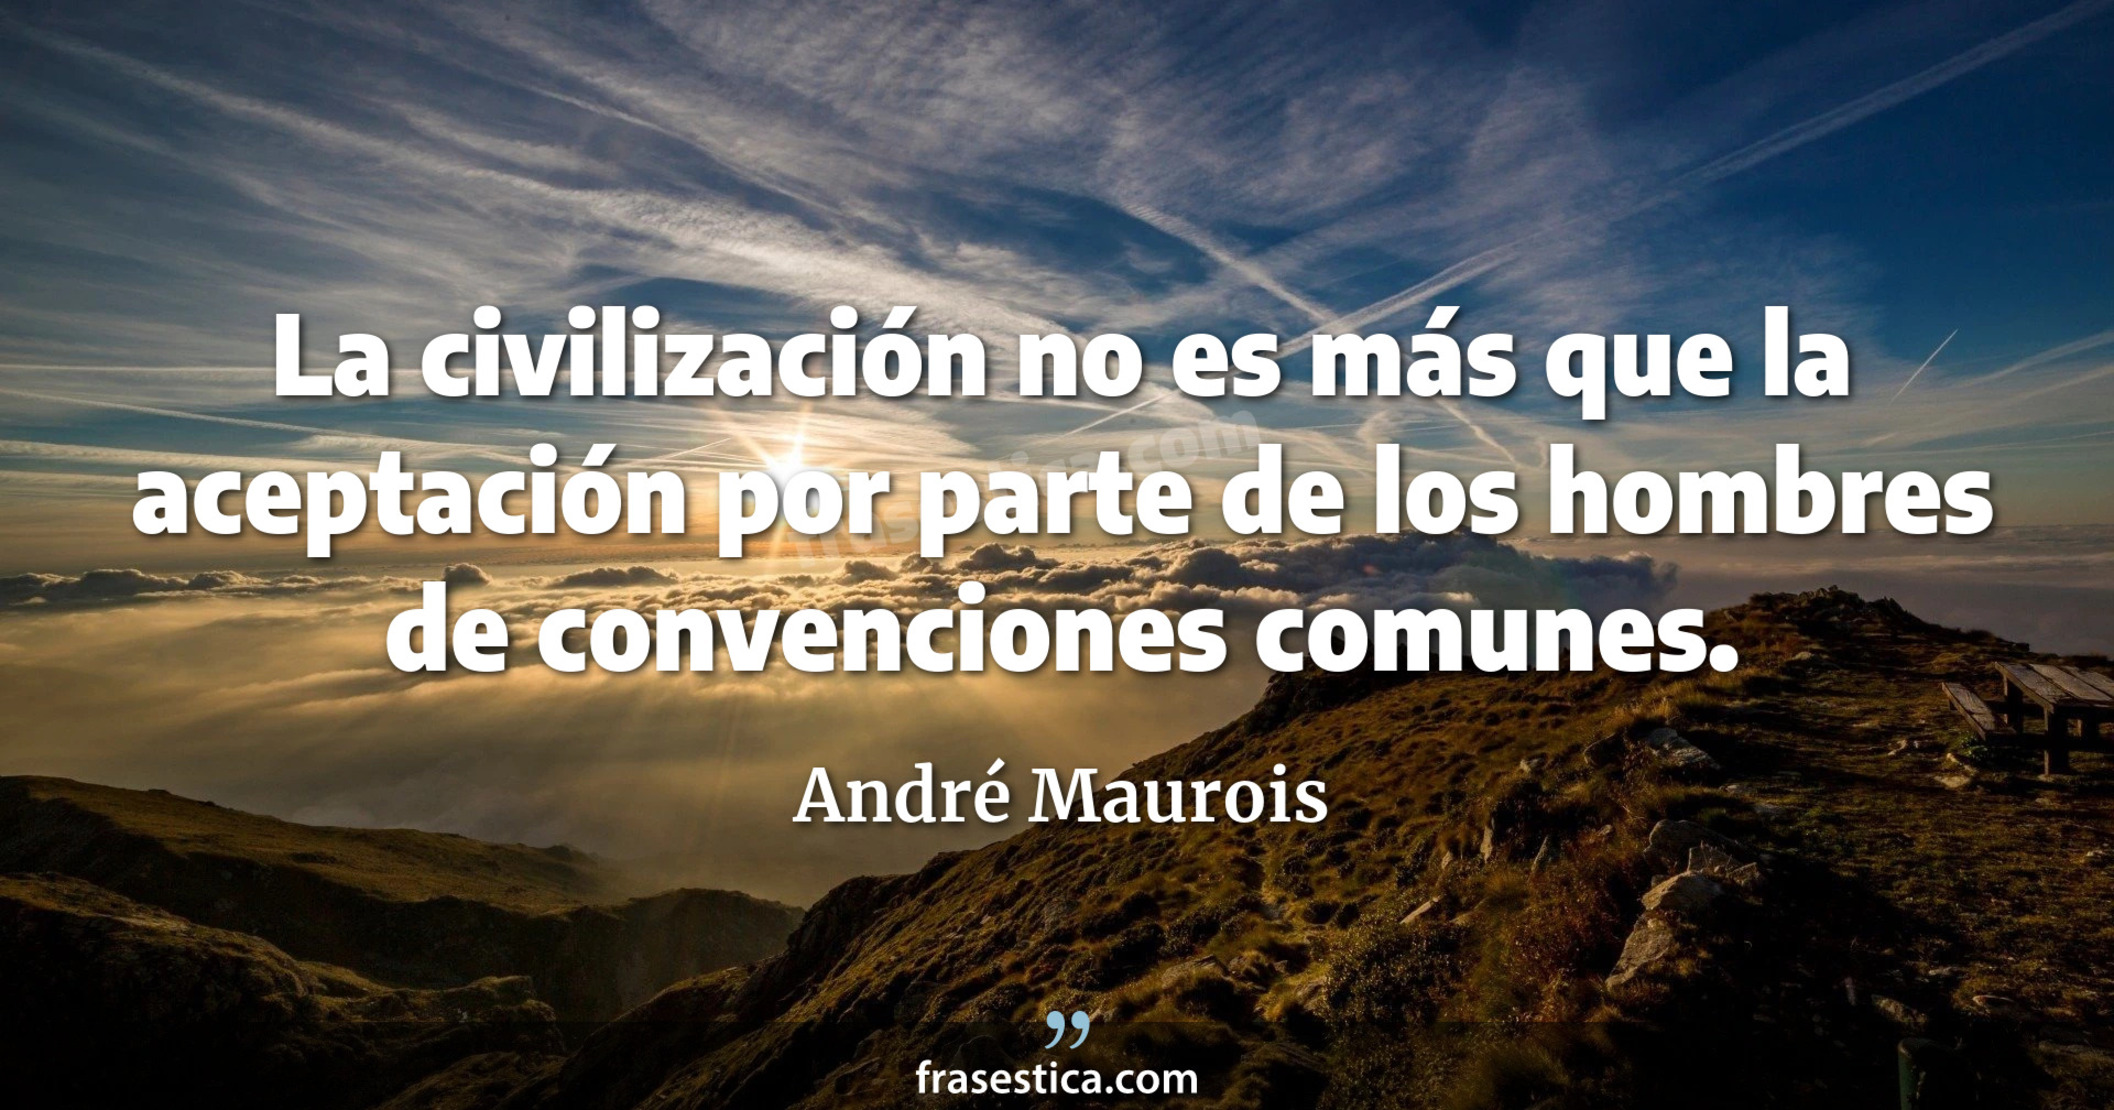 La civilización no es más que la aceptación por parte de los hombres de convenciones comunes. - André Maurois